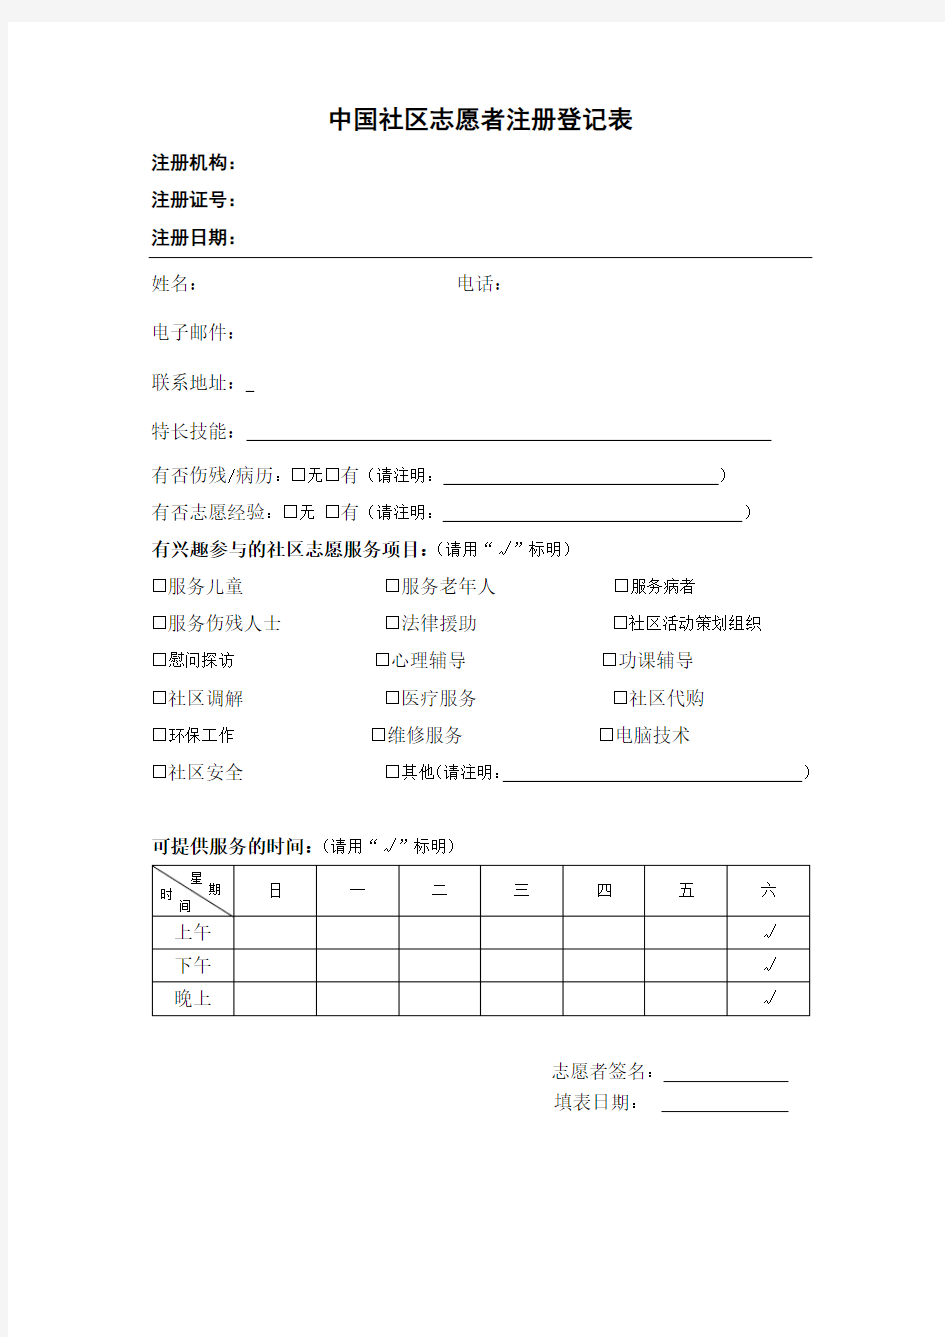 中国社区志愿者注册登记表